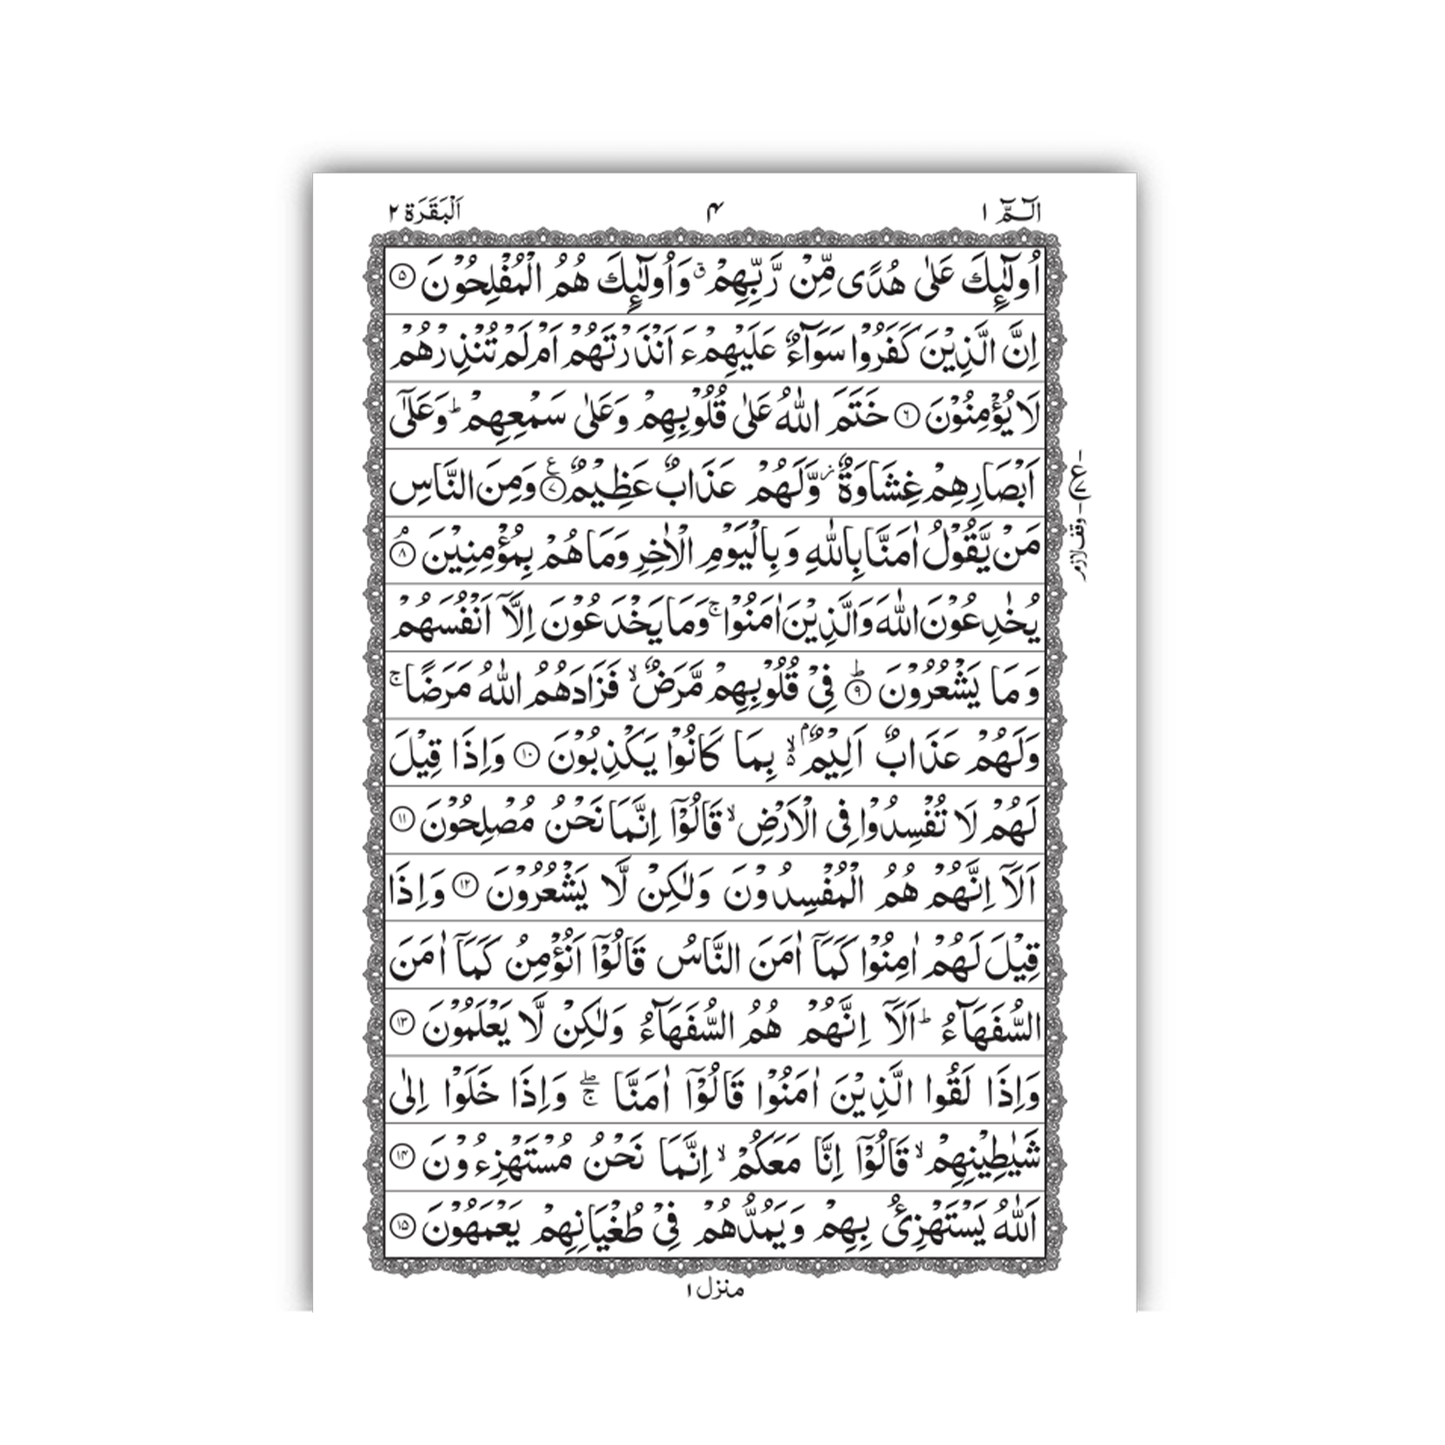 [248/P] Al-Quran-Ul-Kareem In 15 Lines (Without Translation) - Pocket Size